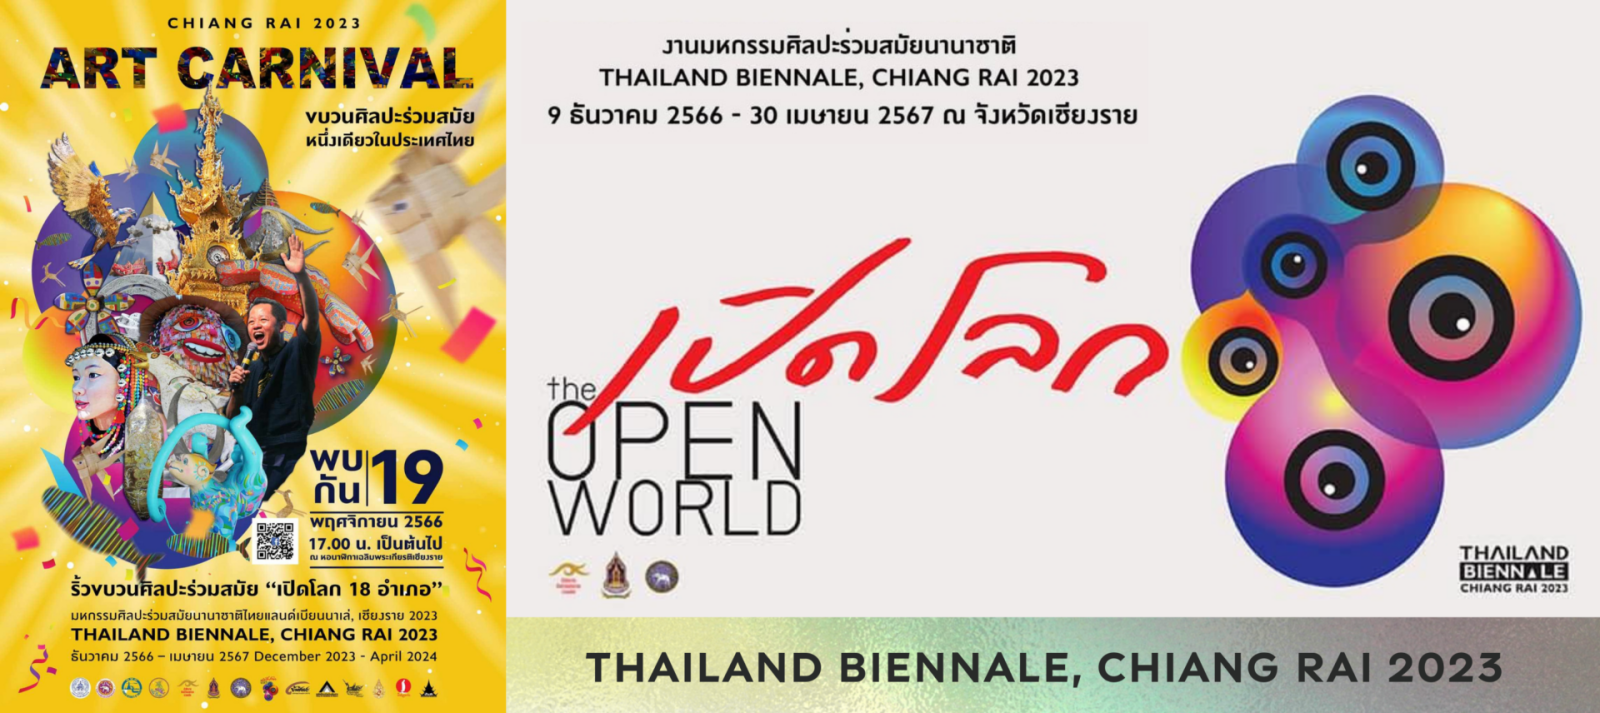 อาจารย์เฉลิมชัย เชิญคนไทยร่วมชมงาน Chiang Rai 2023 Art Carnival และงาน Thailand Biennale, Chiangrai 2023